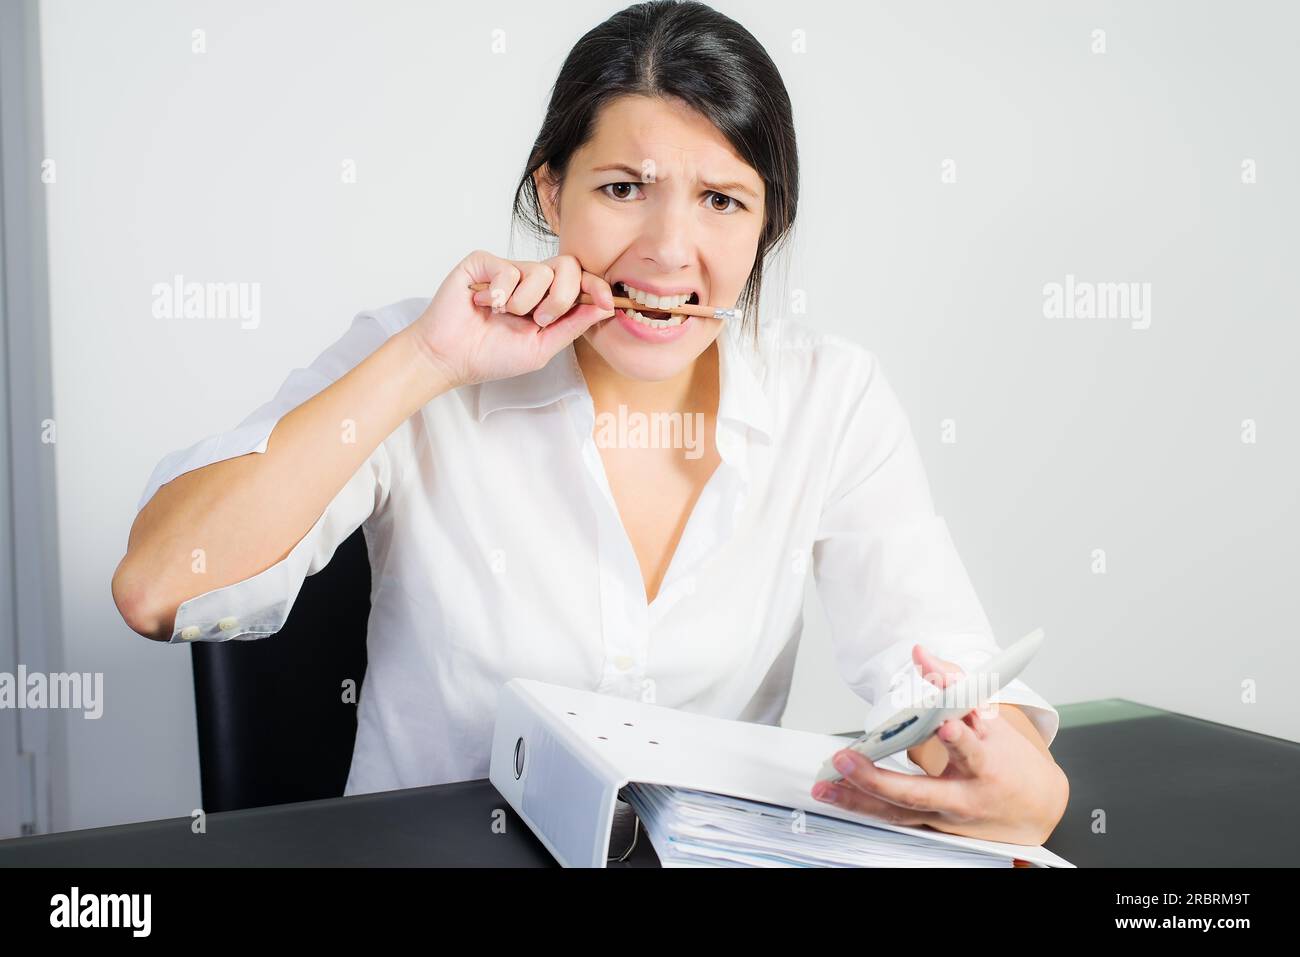 Geschäftsfrau mit einem verzweifelten Ausdruck beißen ihre Feder in Frustration, Angst oder Wut, als sie an ihrem Schreibtisch mit einem Taschenrechner in der Hand sitzt Stockfoto